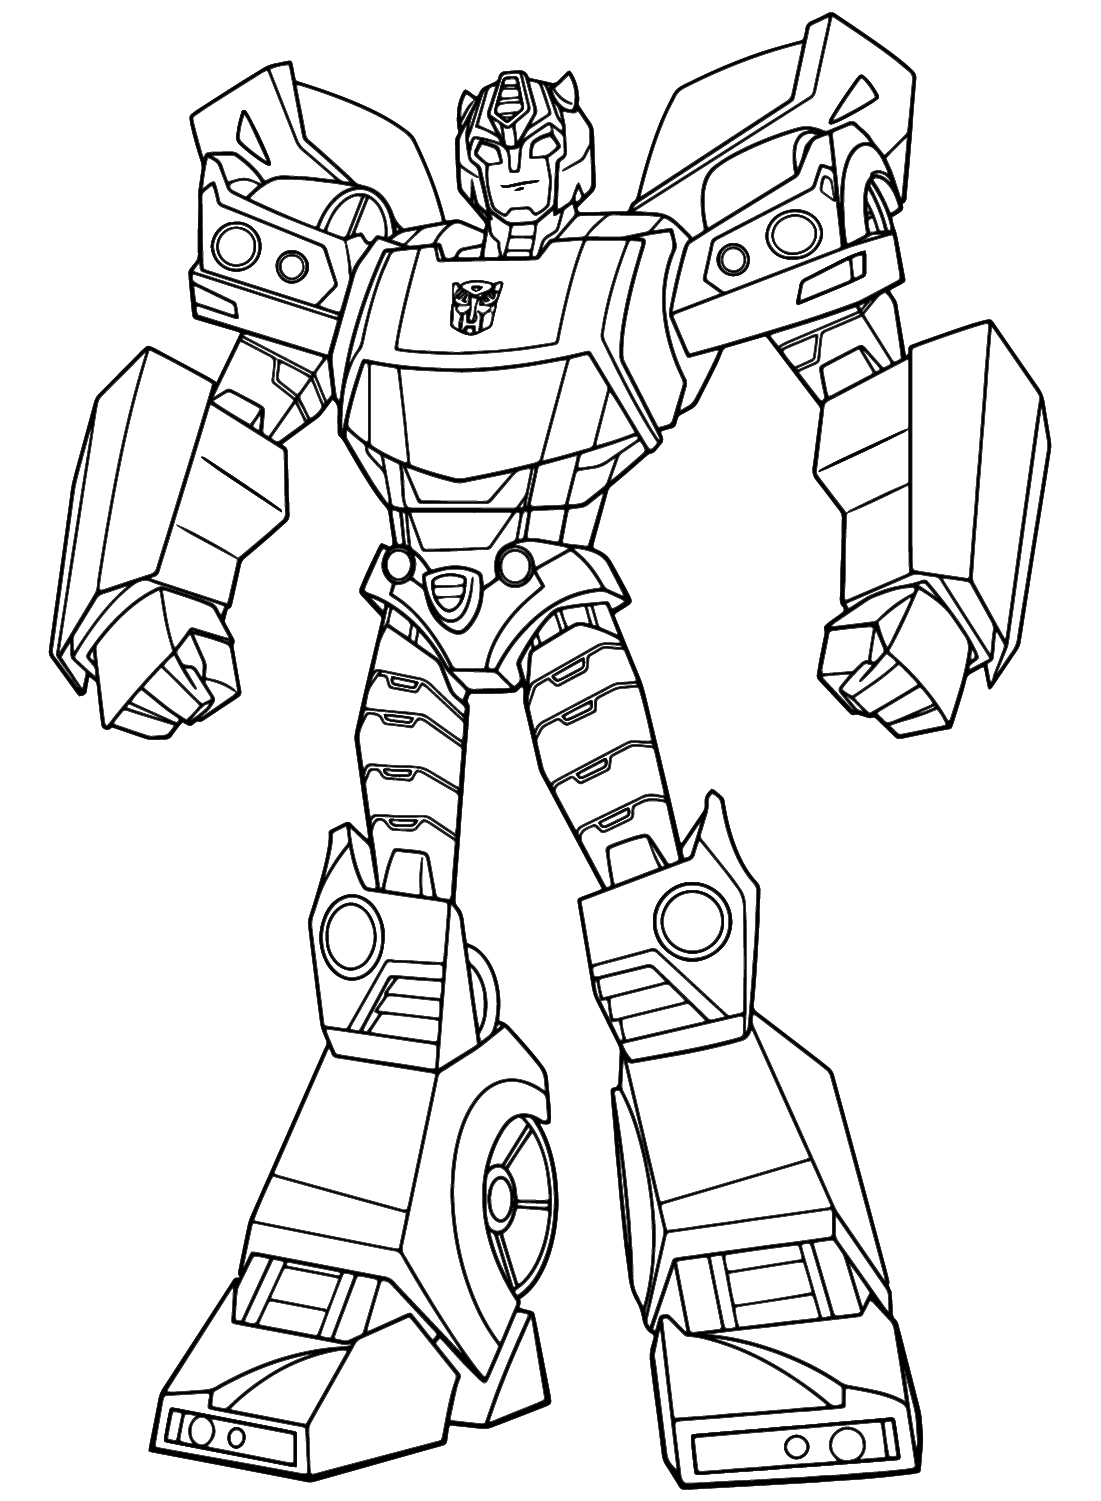 Coloração oficial Takara Tomy Cyberverse de Transformers